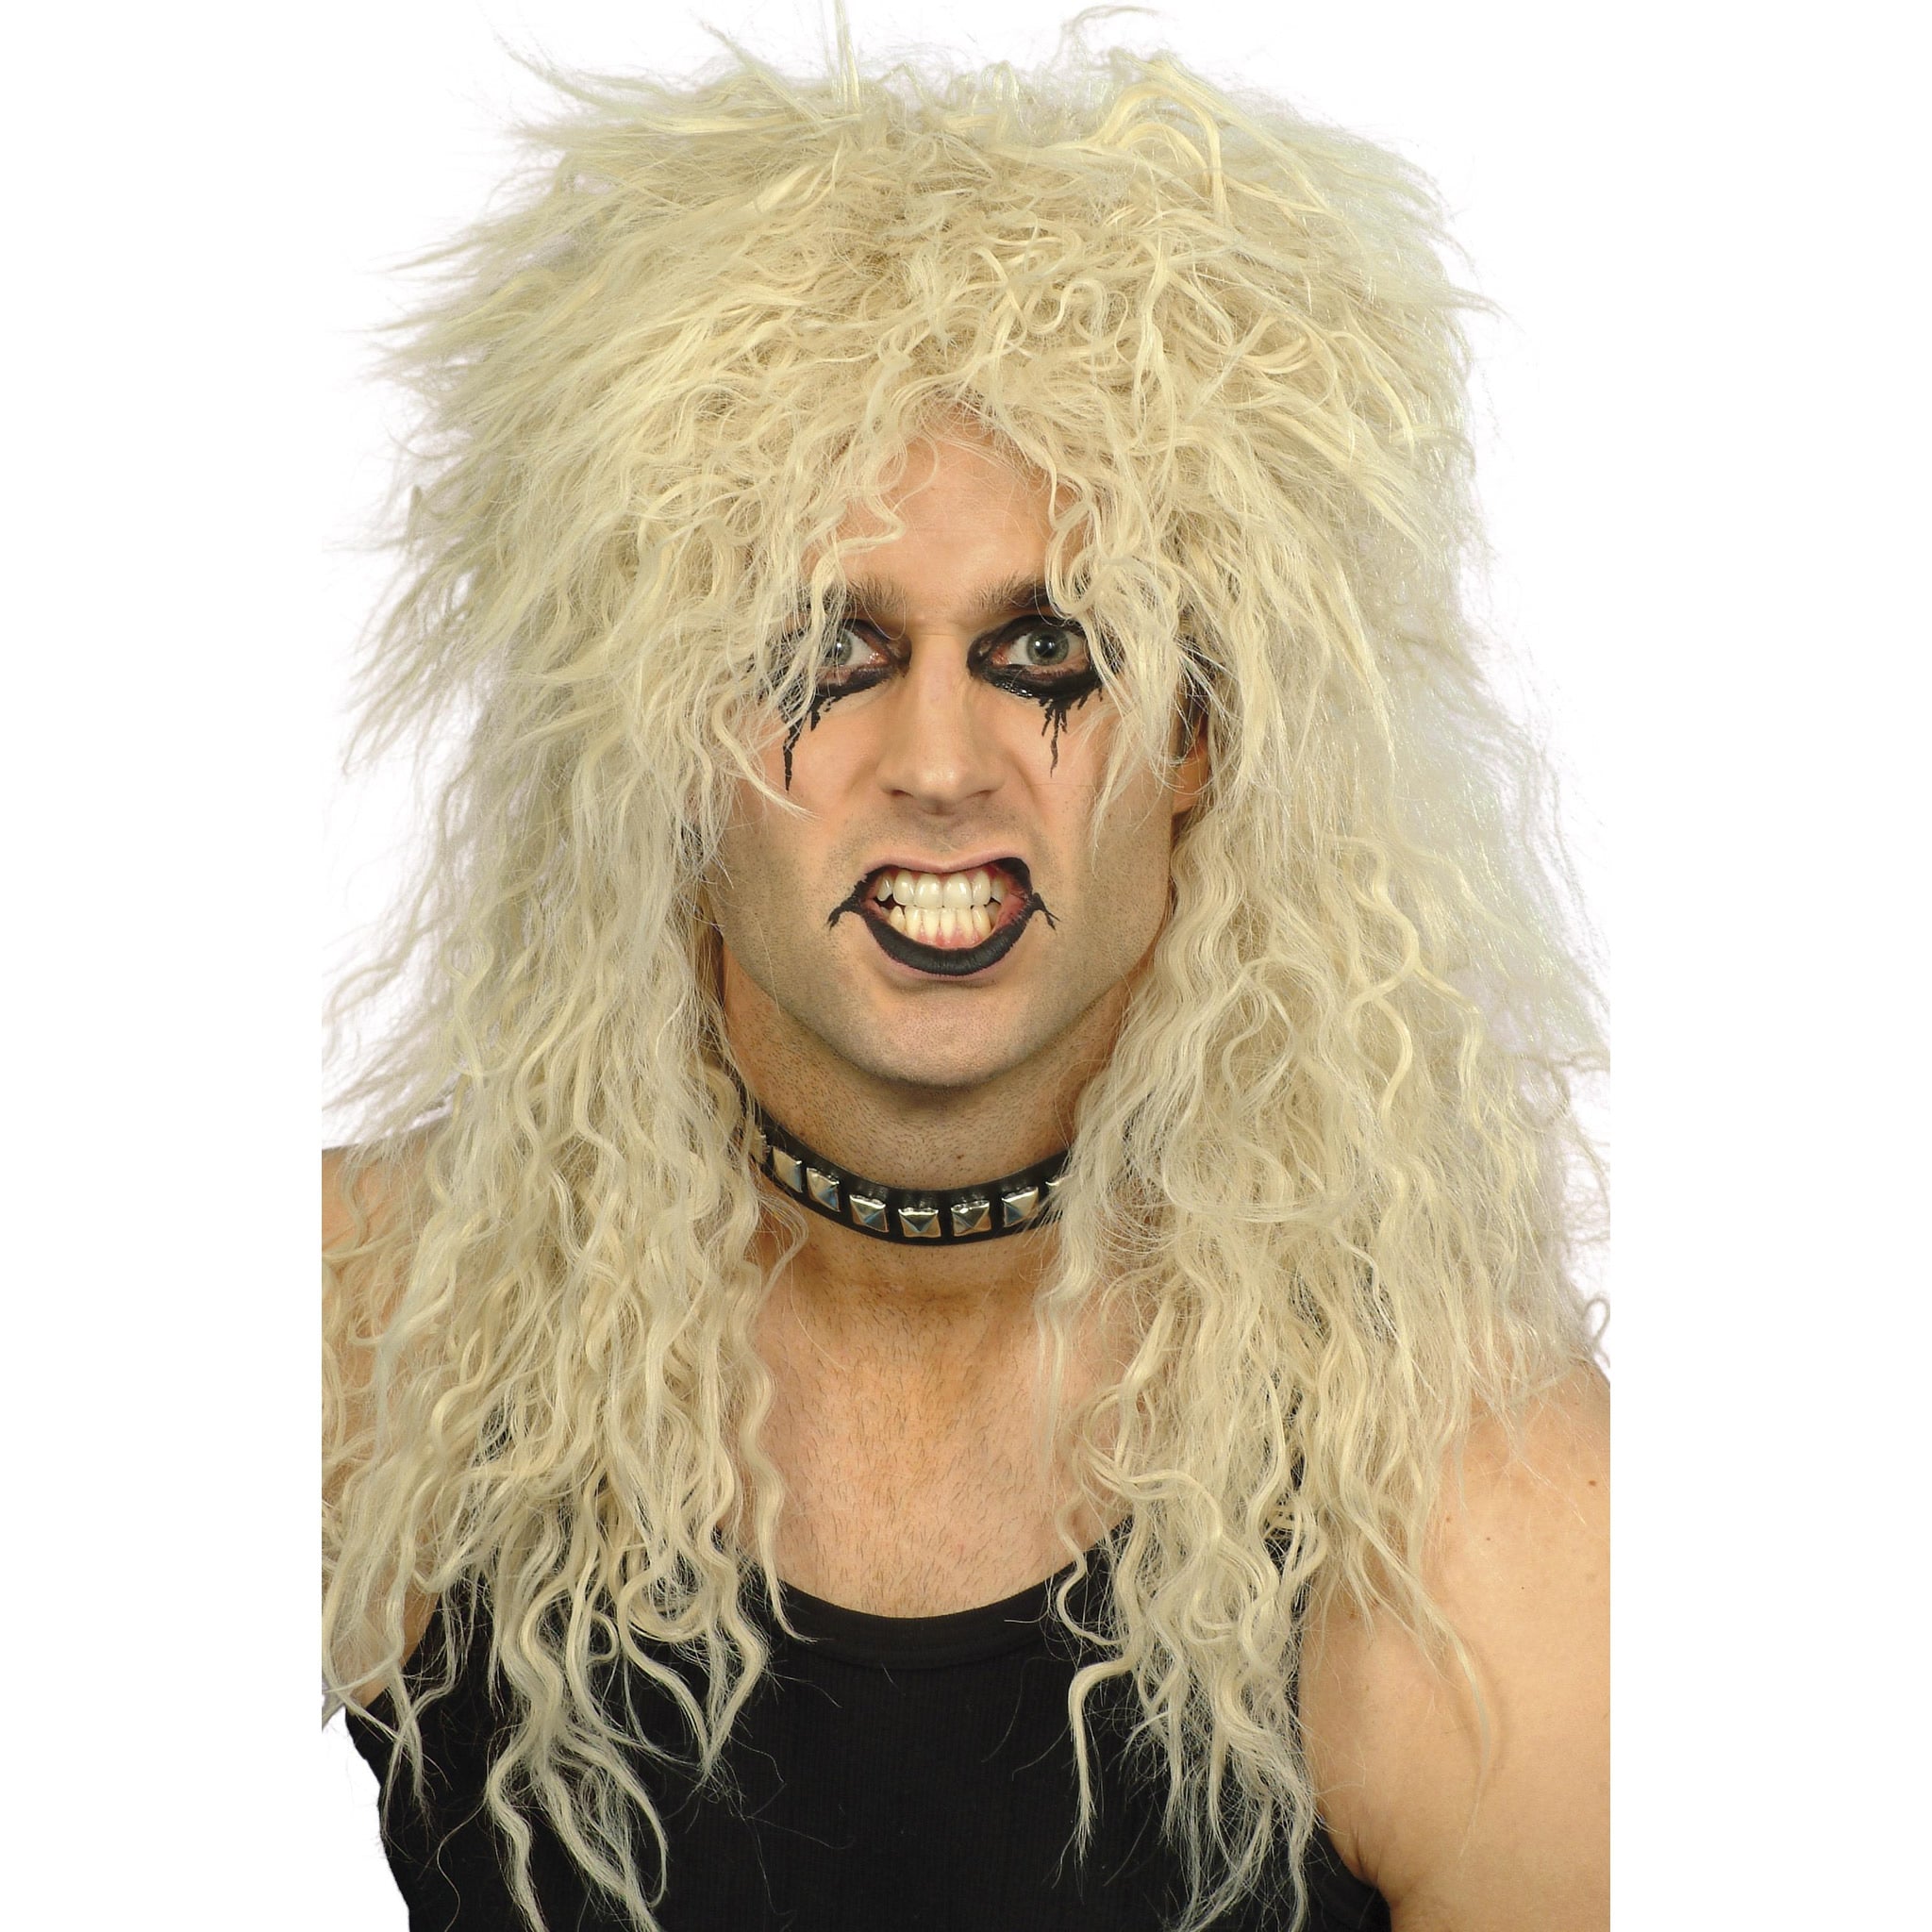 Hard rocker style long blond wig